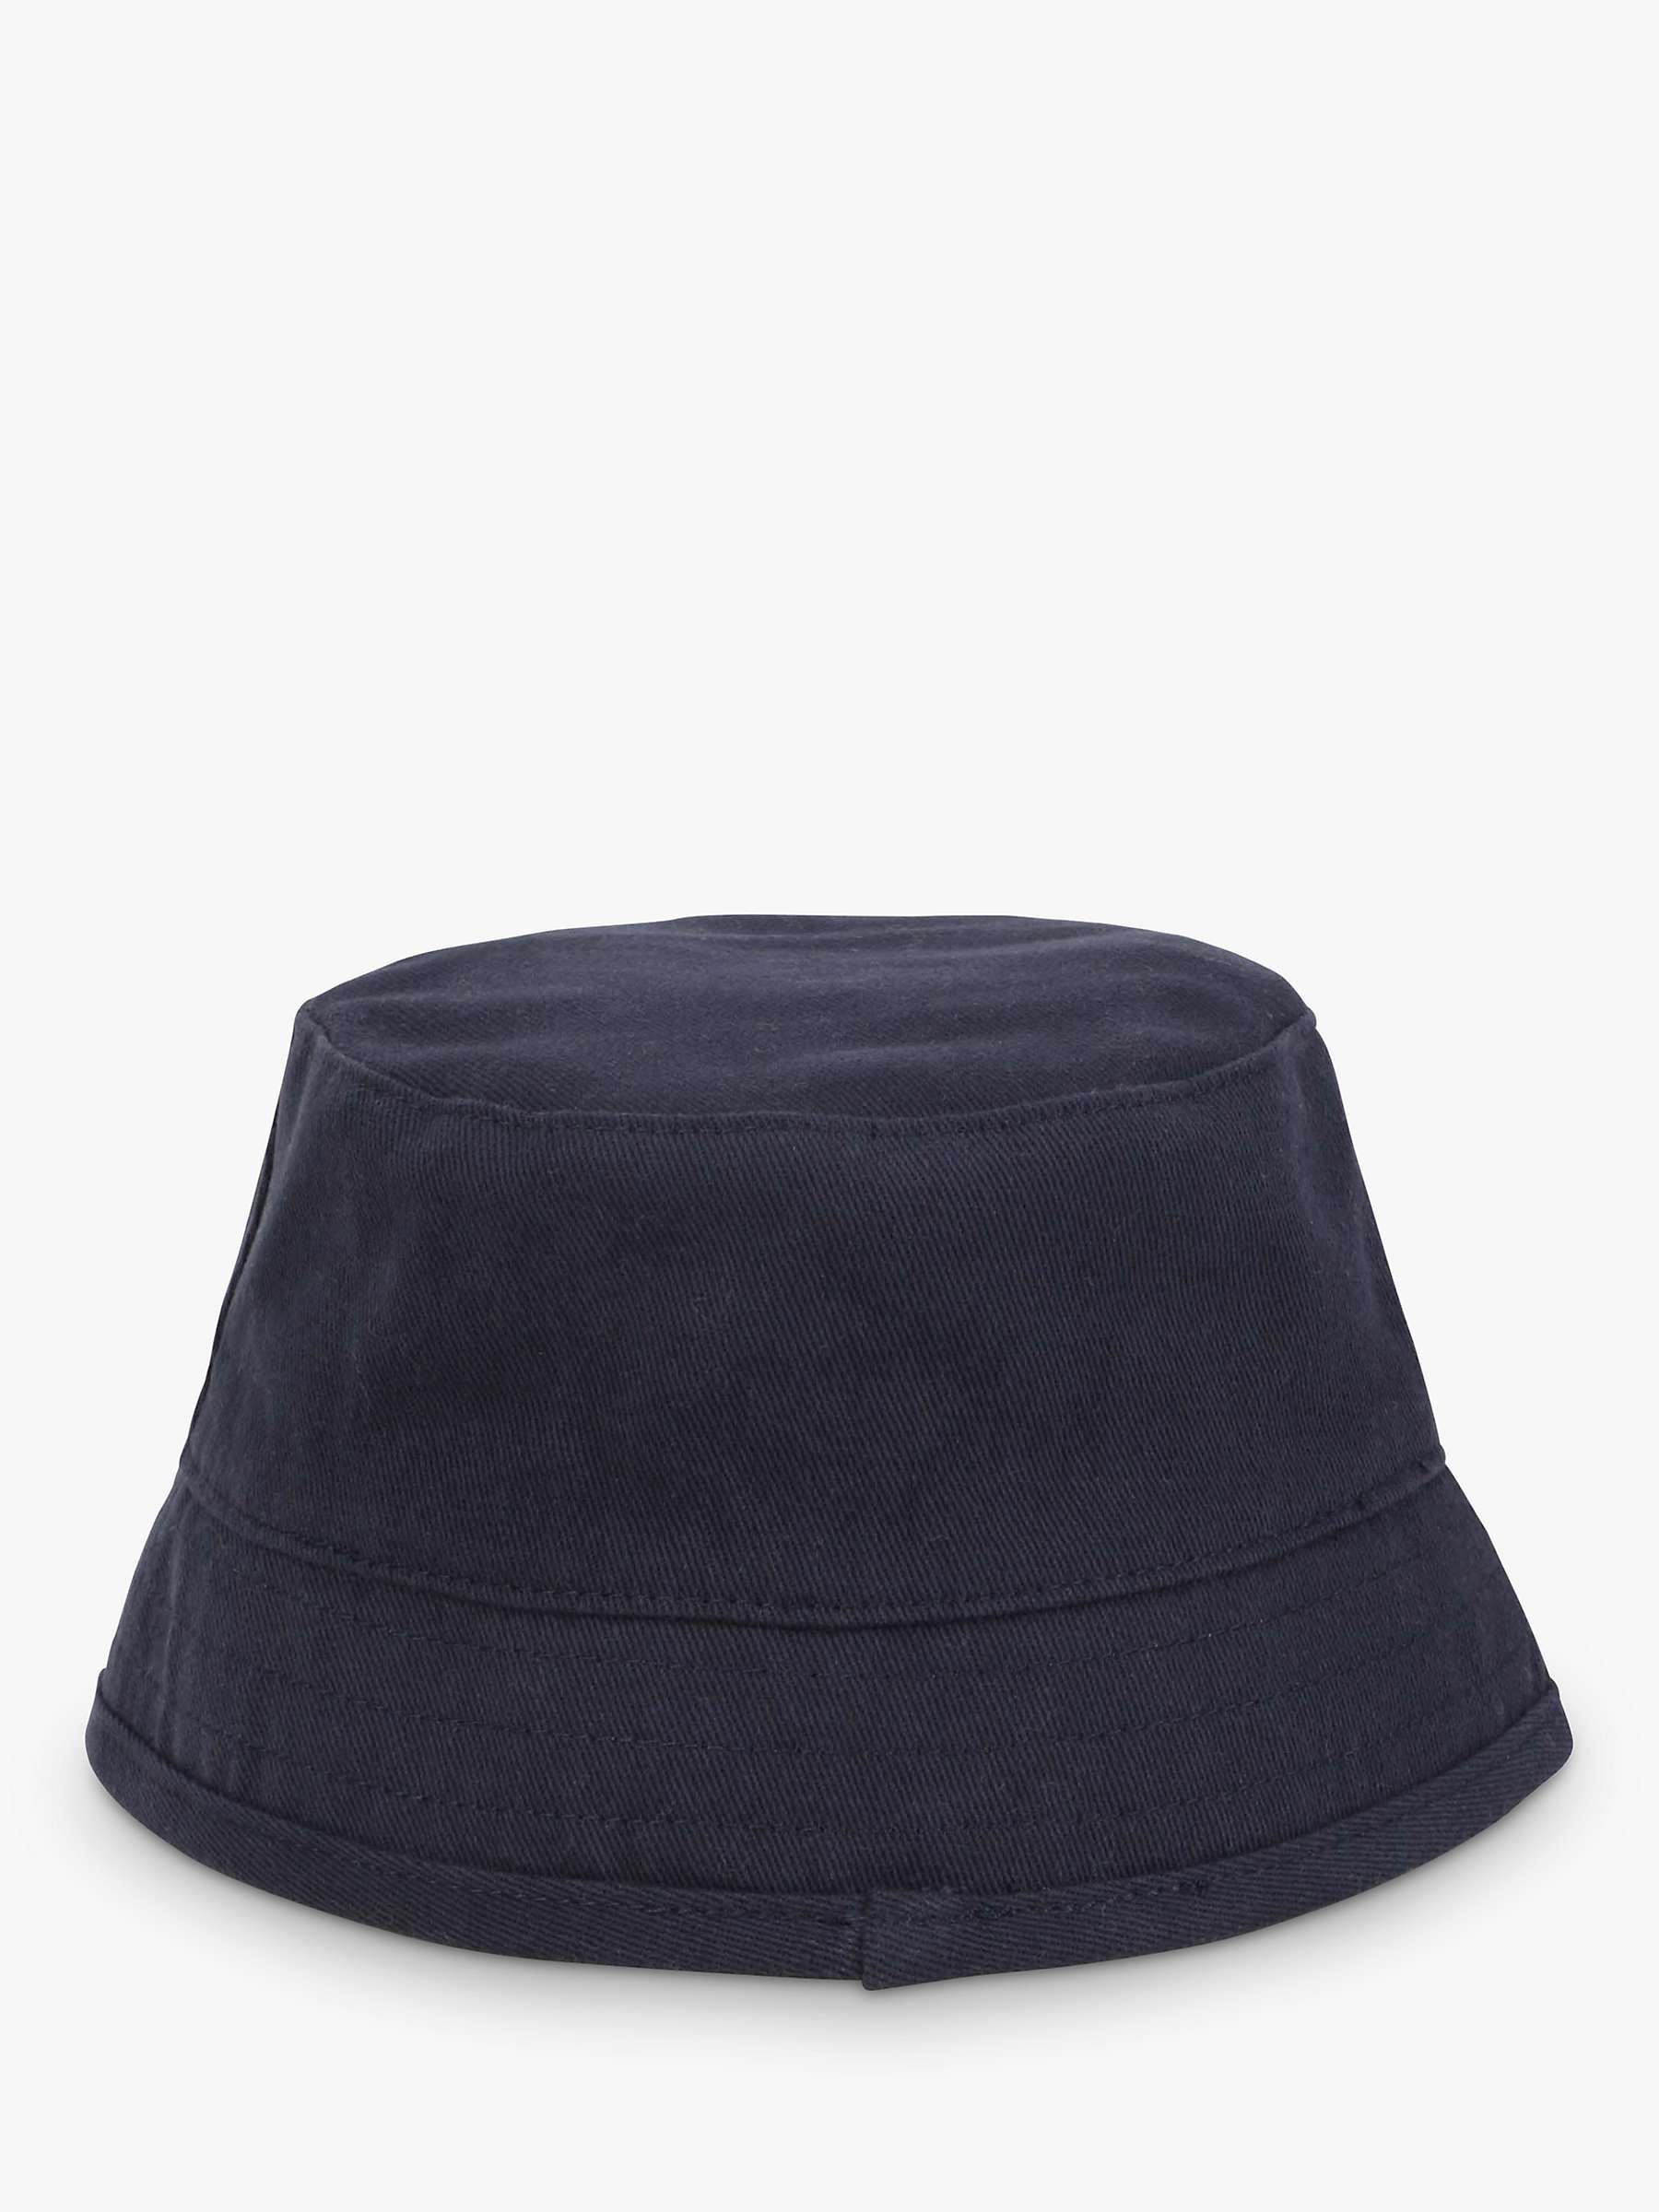 Buy BOSS Kids' Bucket Hat, Navy Online at johnlewis.com